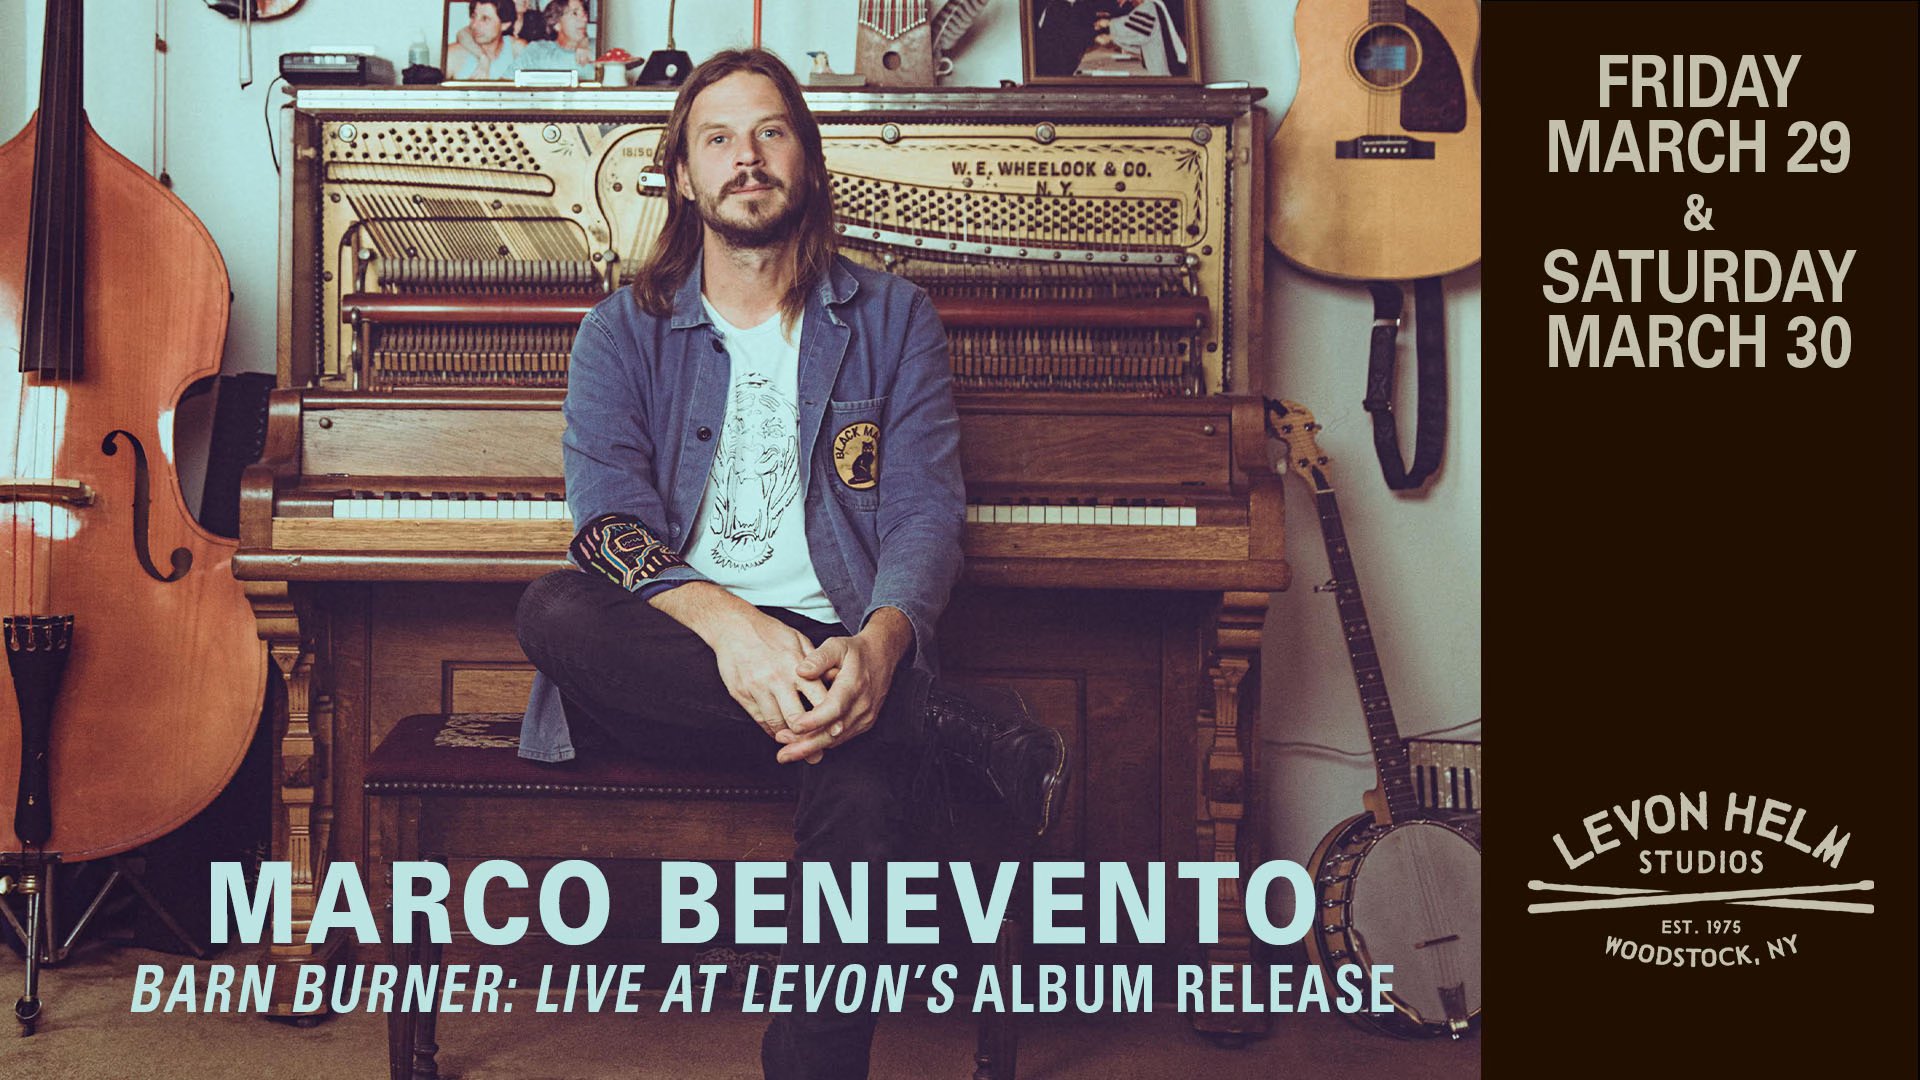 Marco Benevento Barn Burner: Live At Levon’s Album Release